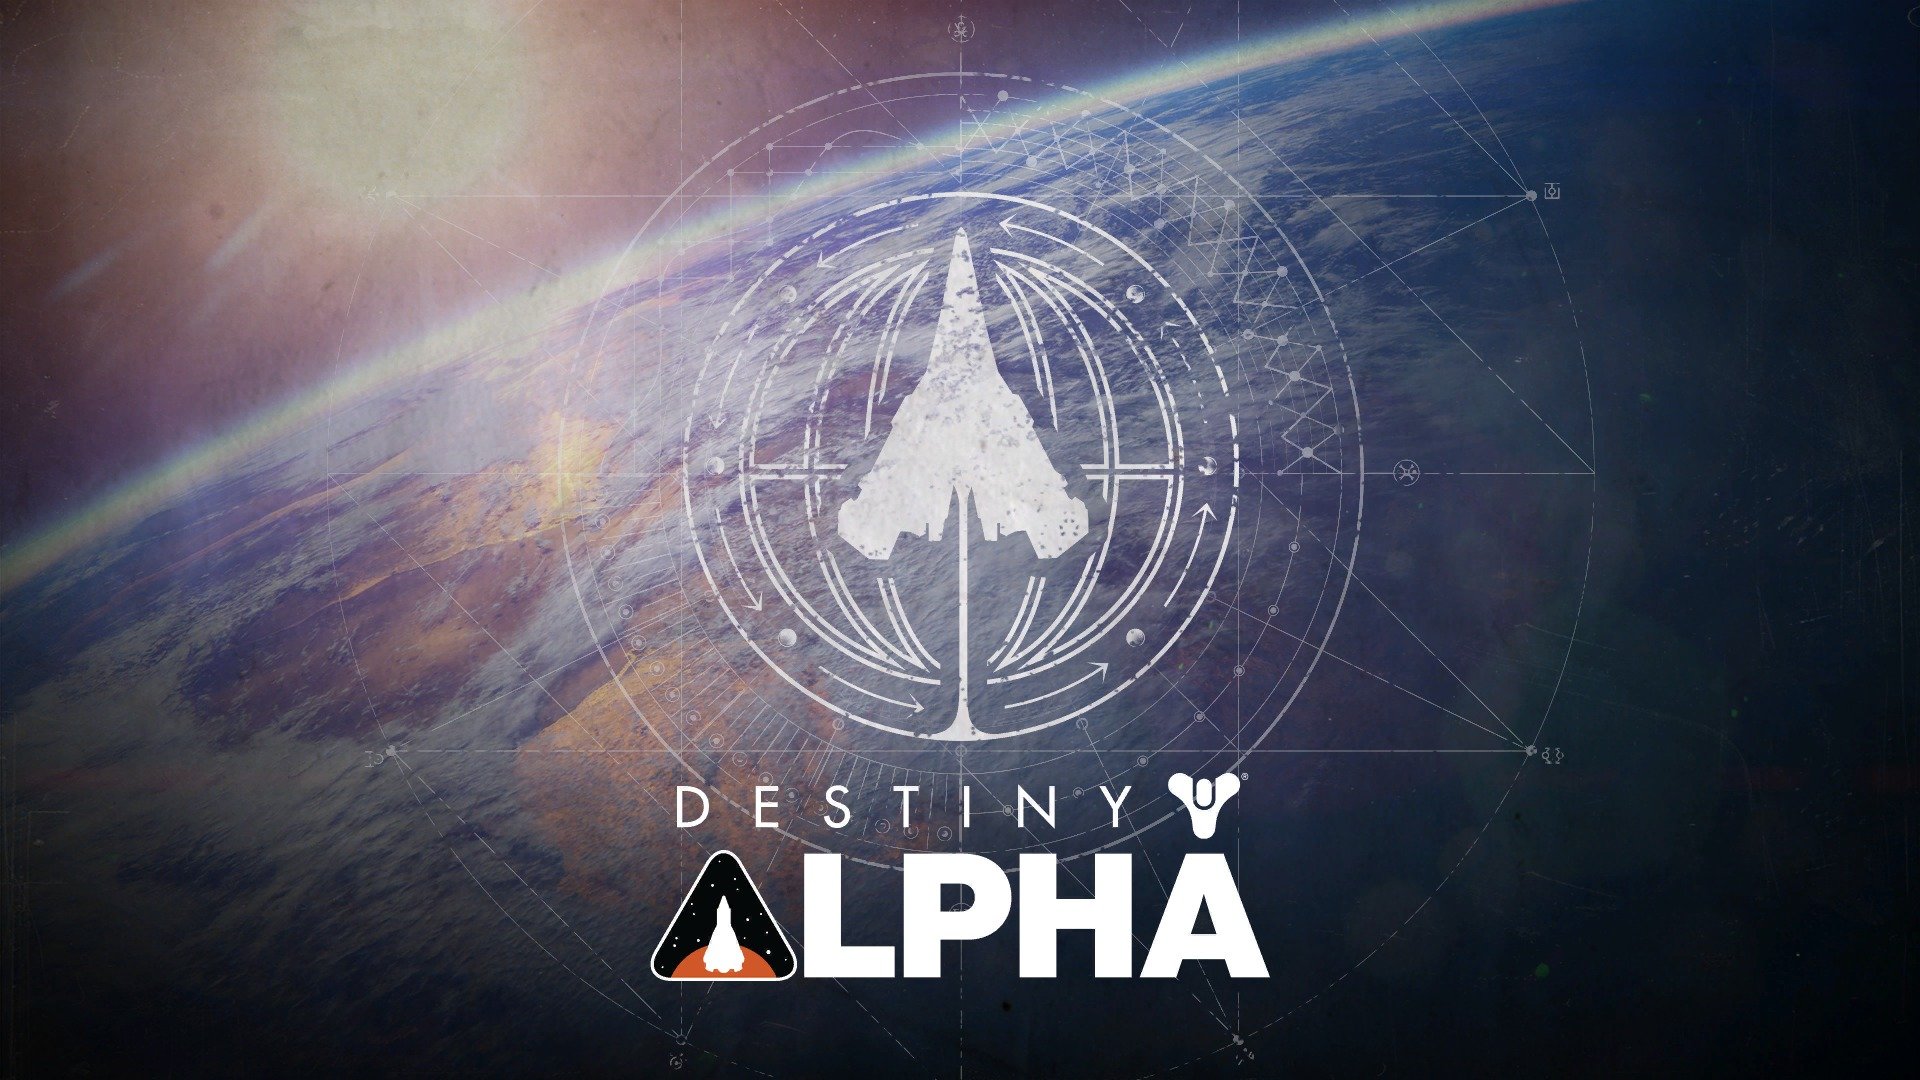 Alpha destiny novice program results